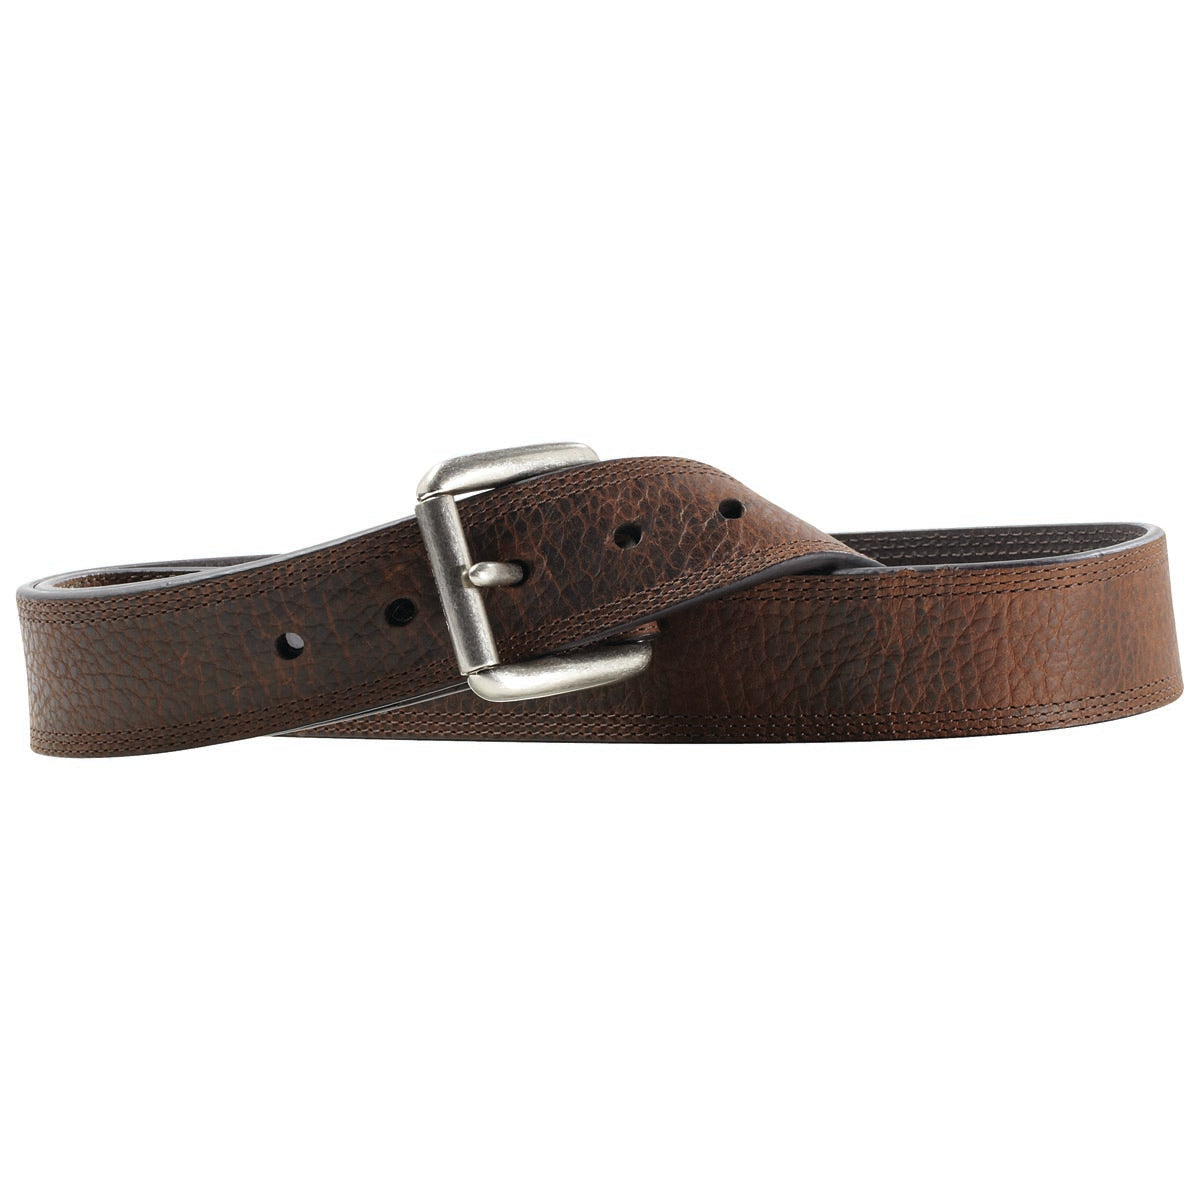 Ariat Men's Leather Western Work Belt - Brown